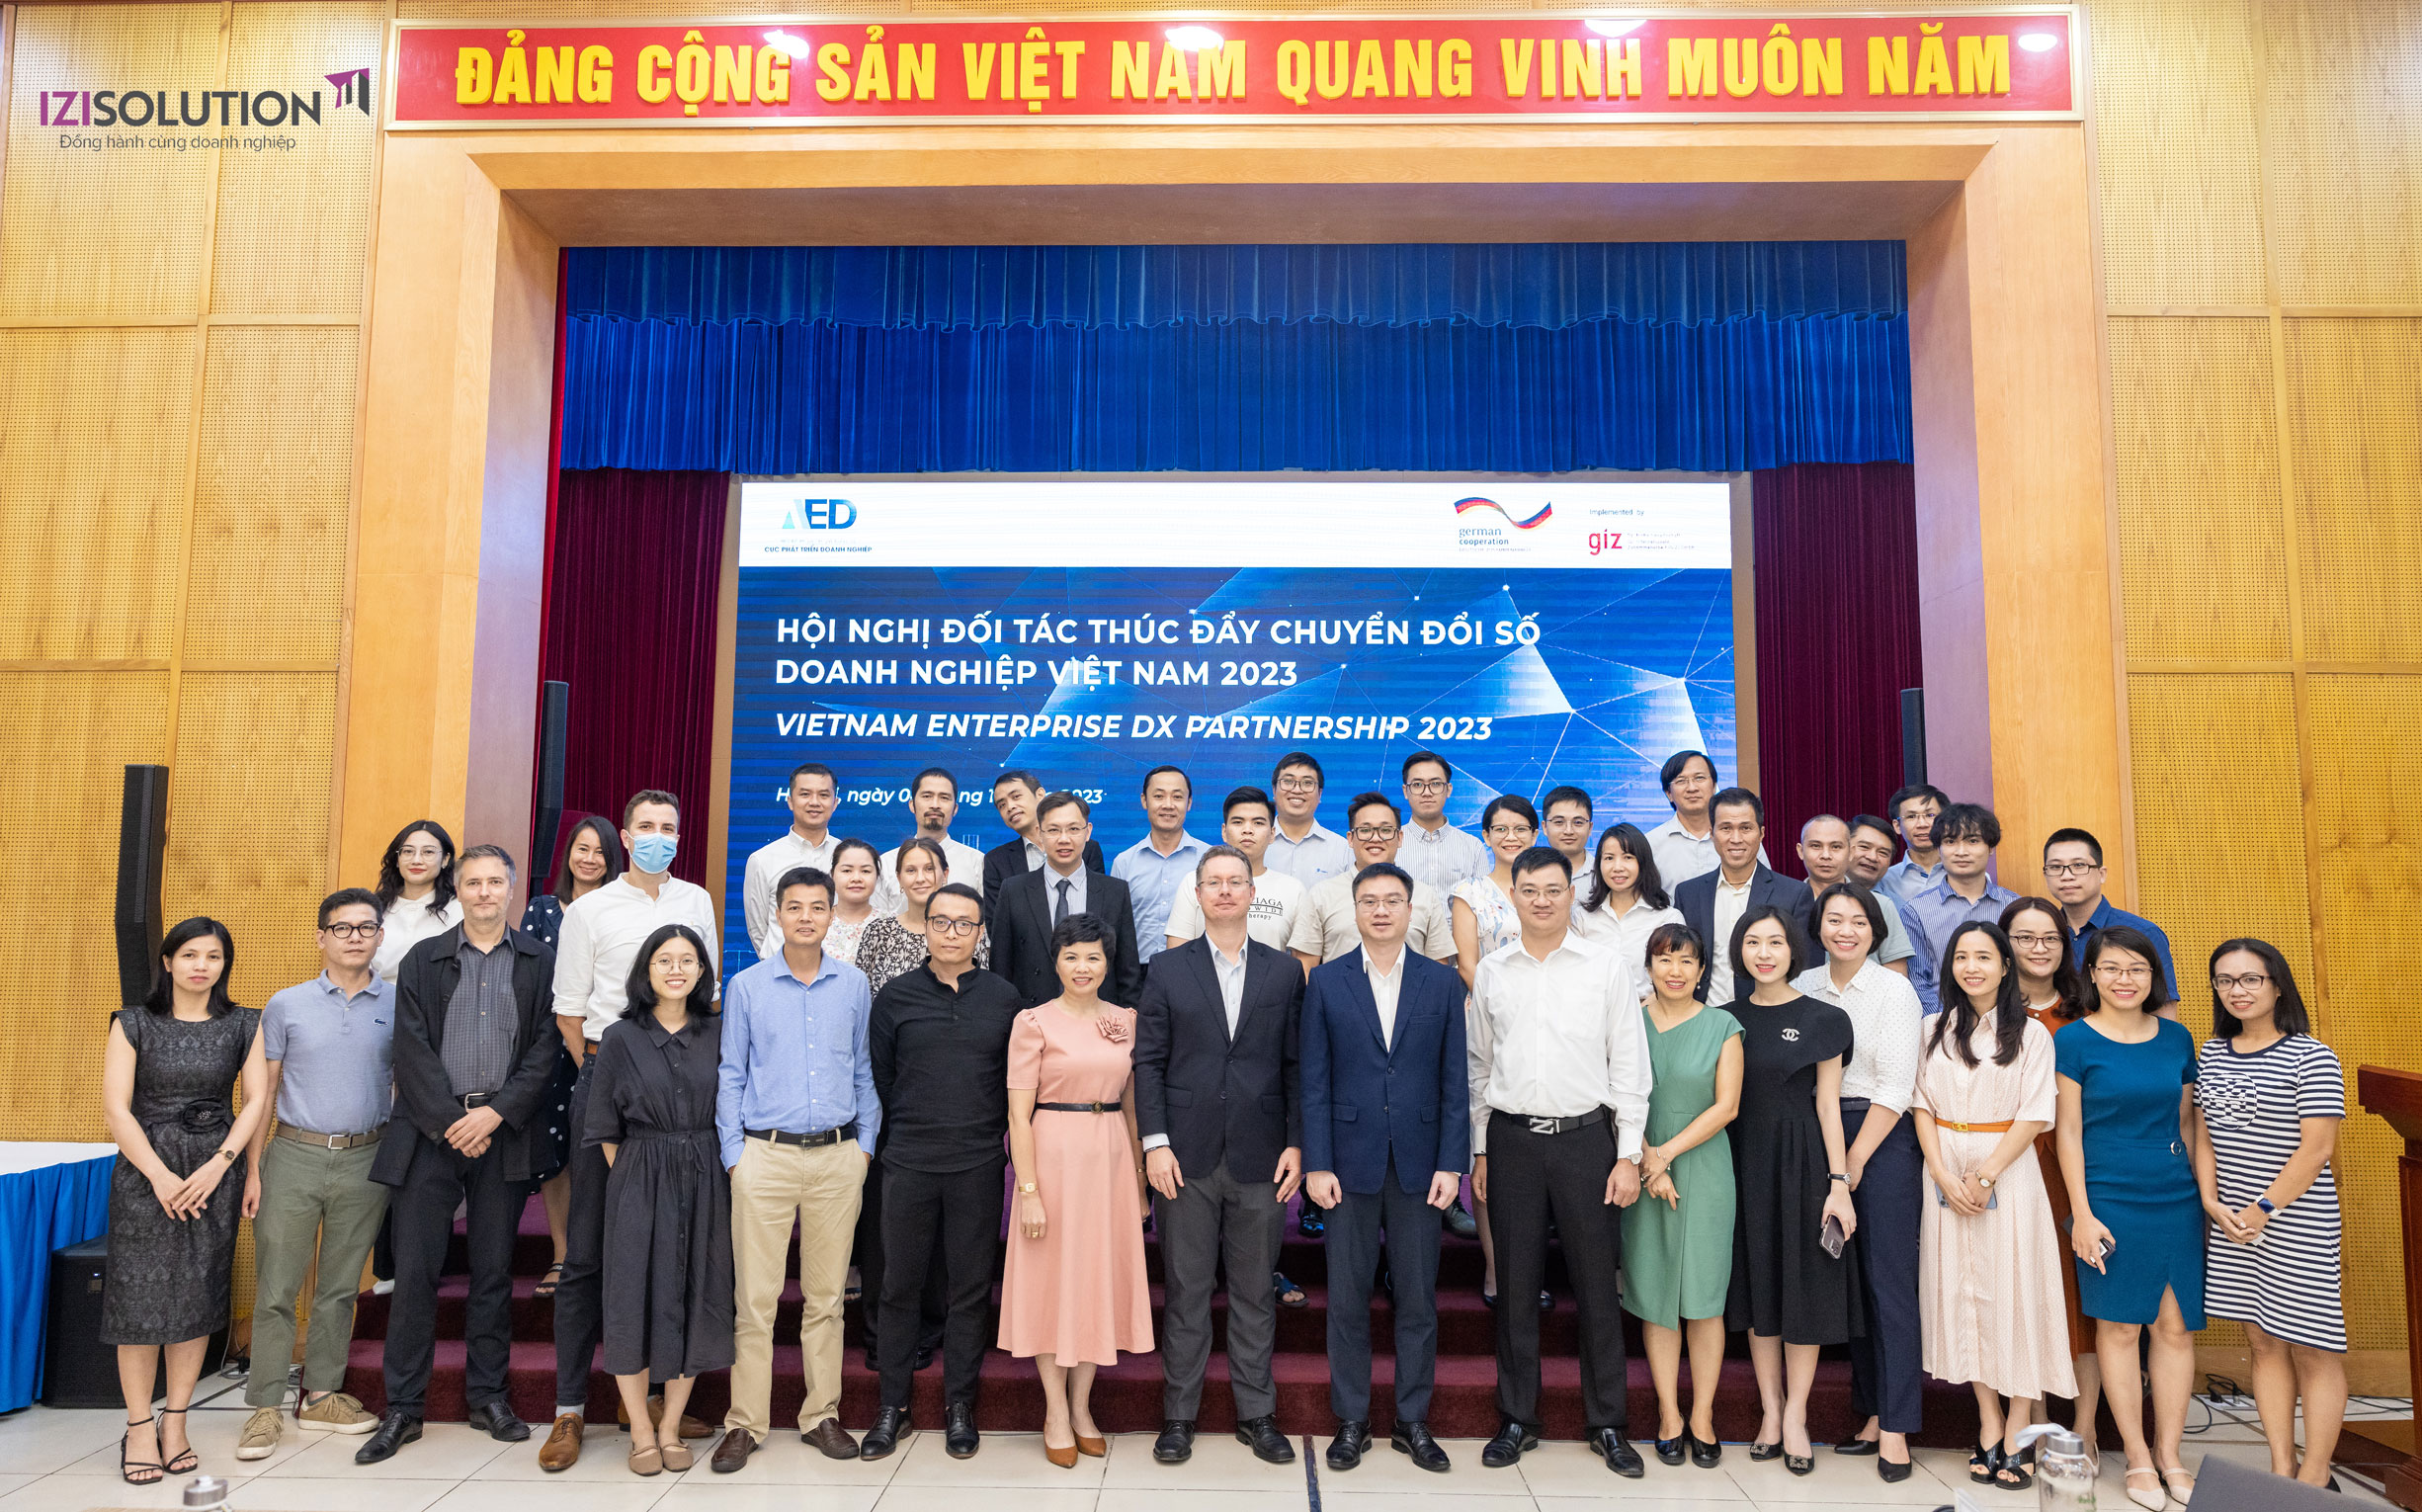 IZISolution Tham Gia Hội Nghị Đối Tác Thúc Đẩy Chuyển Đổi Số Doanh Nghiệp Việt Nam 2023